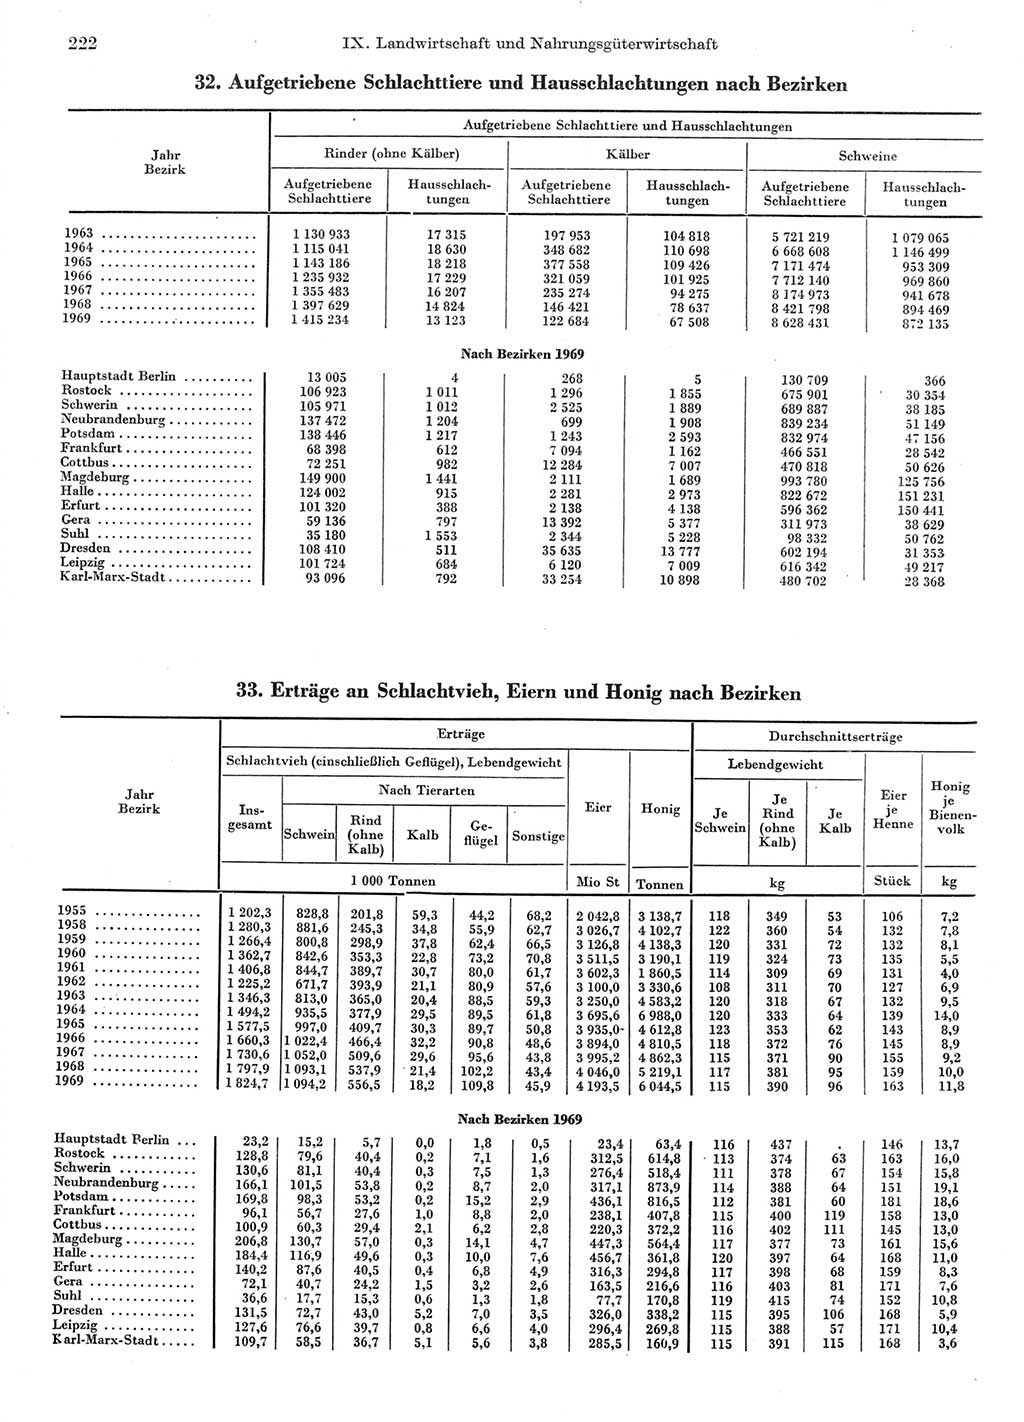 Statistisches Jahrbuch der Deutschen Demokratischen Republik (DDR) 1970, Seite 222 (Stat. Jb. DDR 1970, S. 222)